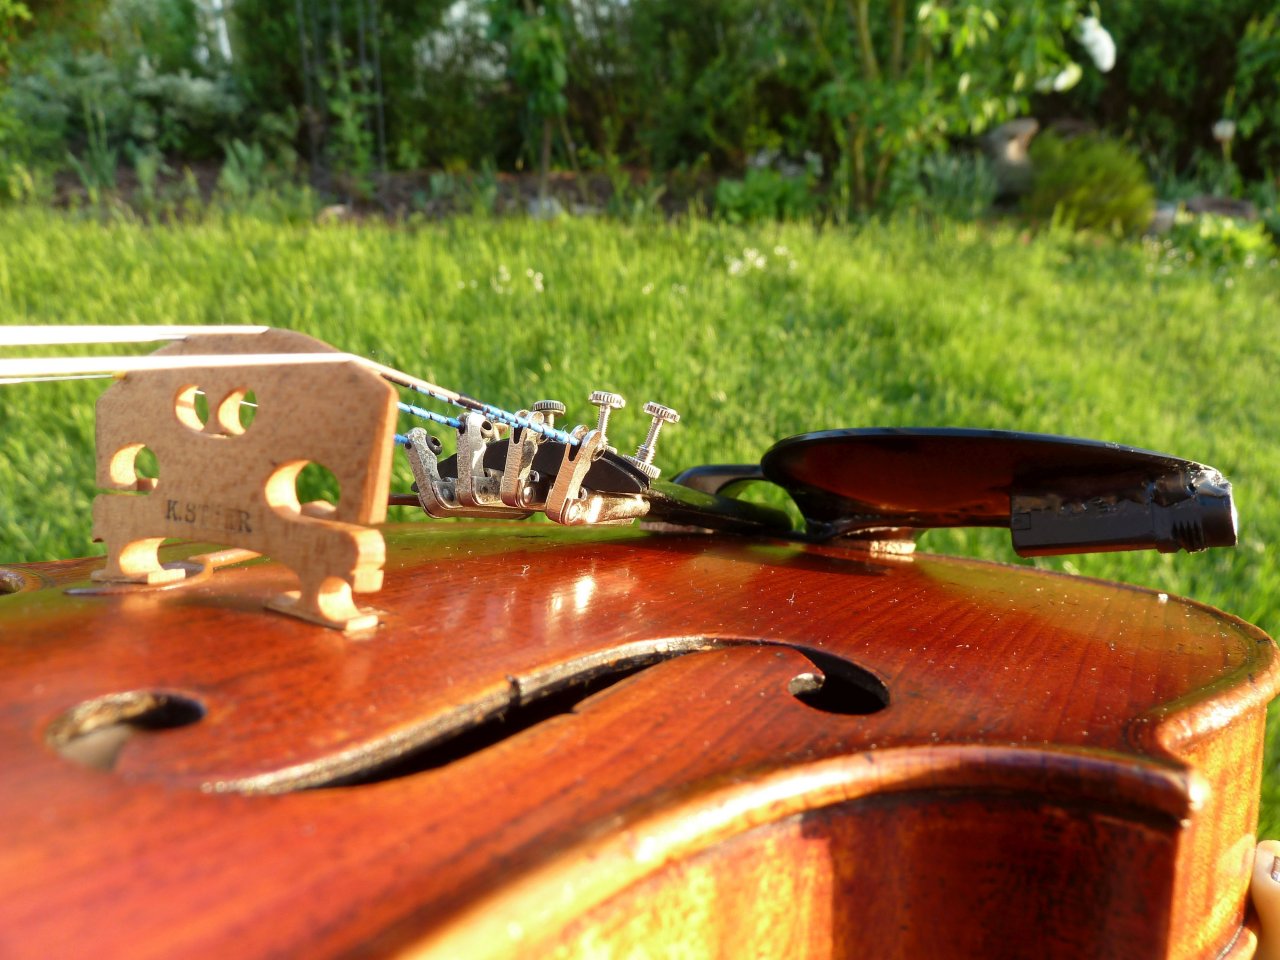 Akustische Geige mit lackiertem K&K Big Shot und Buchse unter Kinnhalter